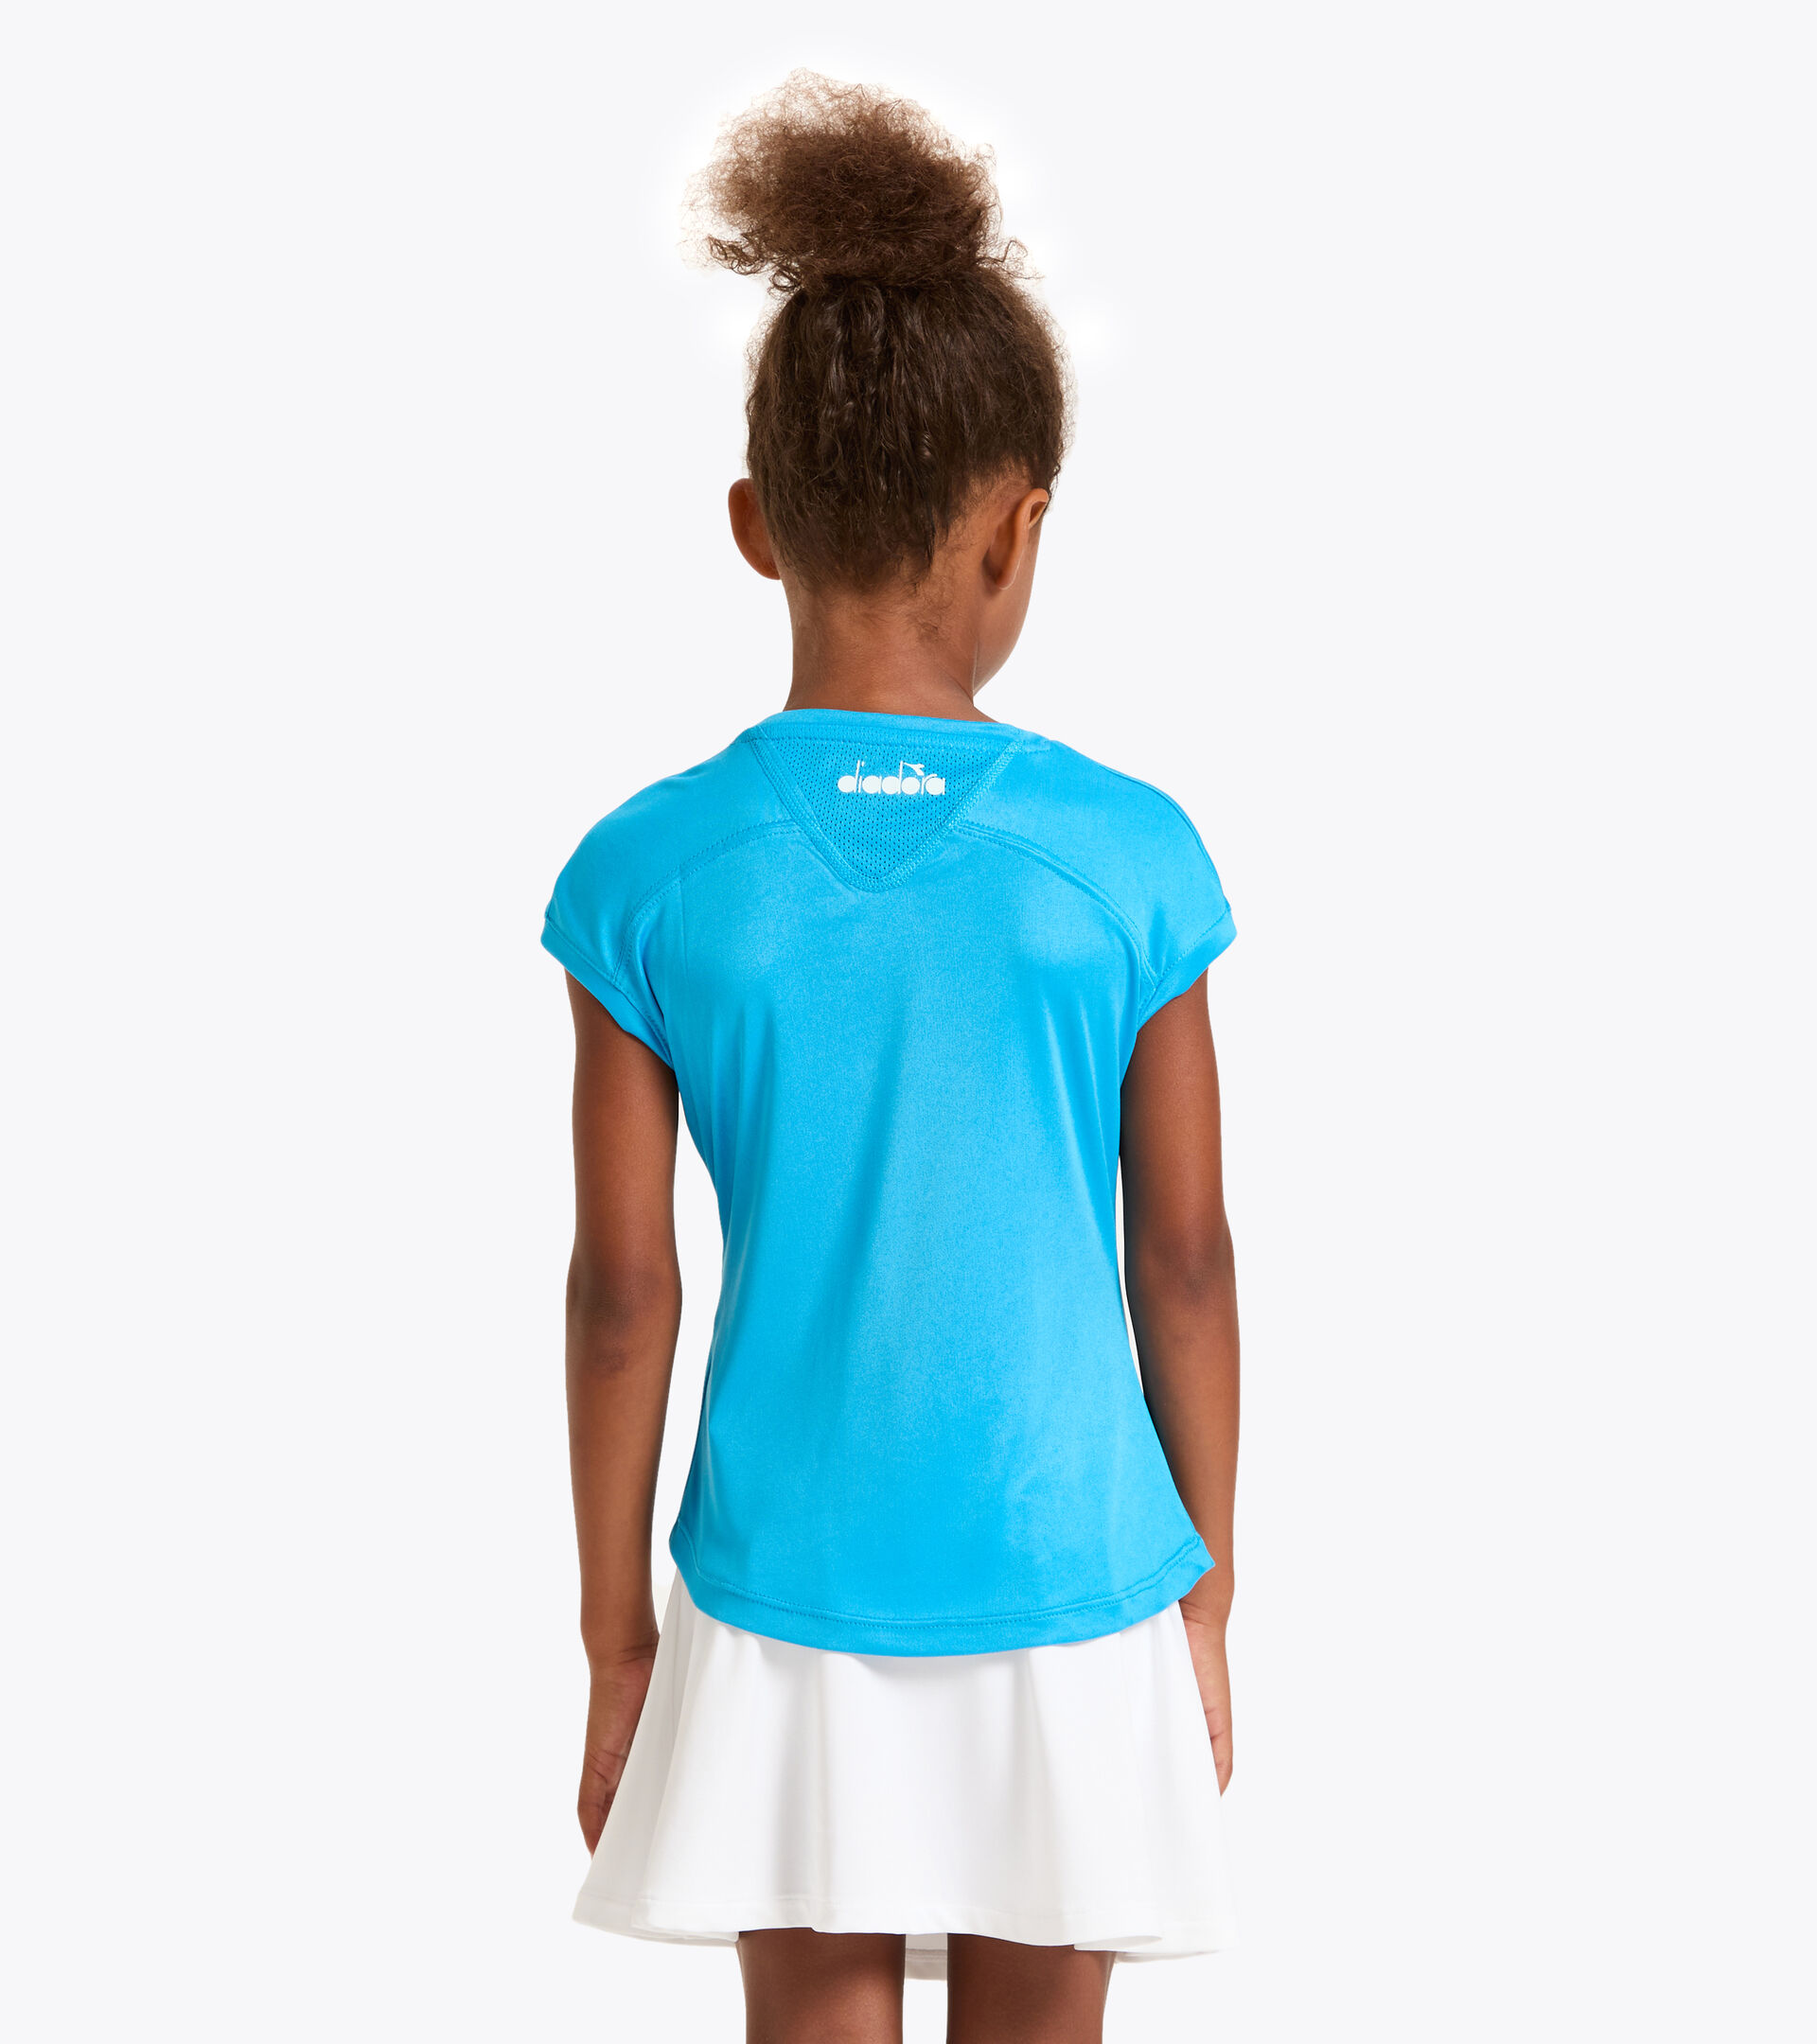 Camiseta de tenis - Junior G. T-SHIRT TEAM AZUL REAL FLUO - Diadora